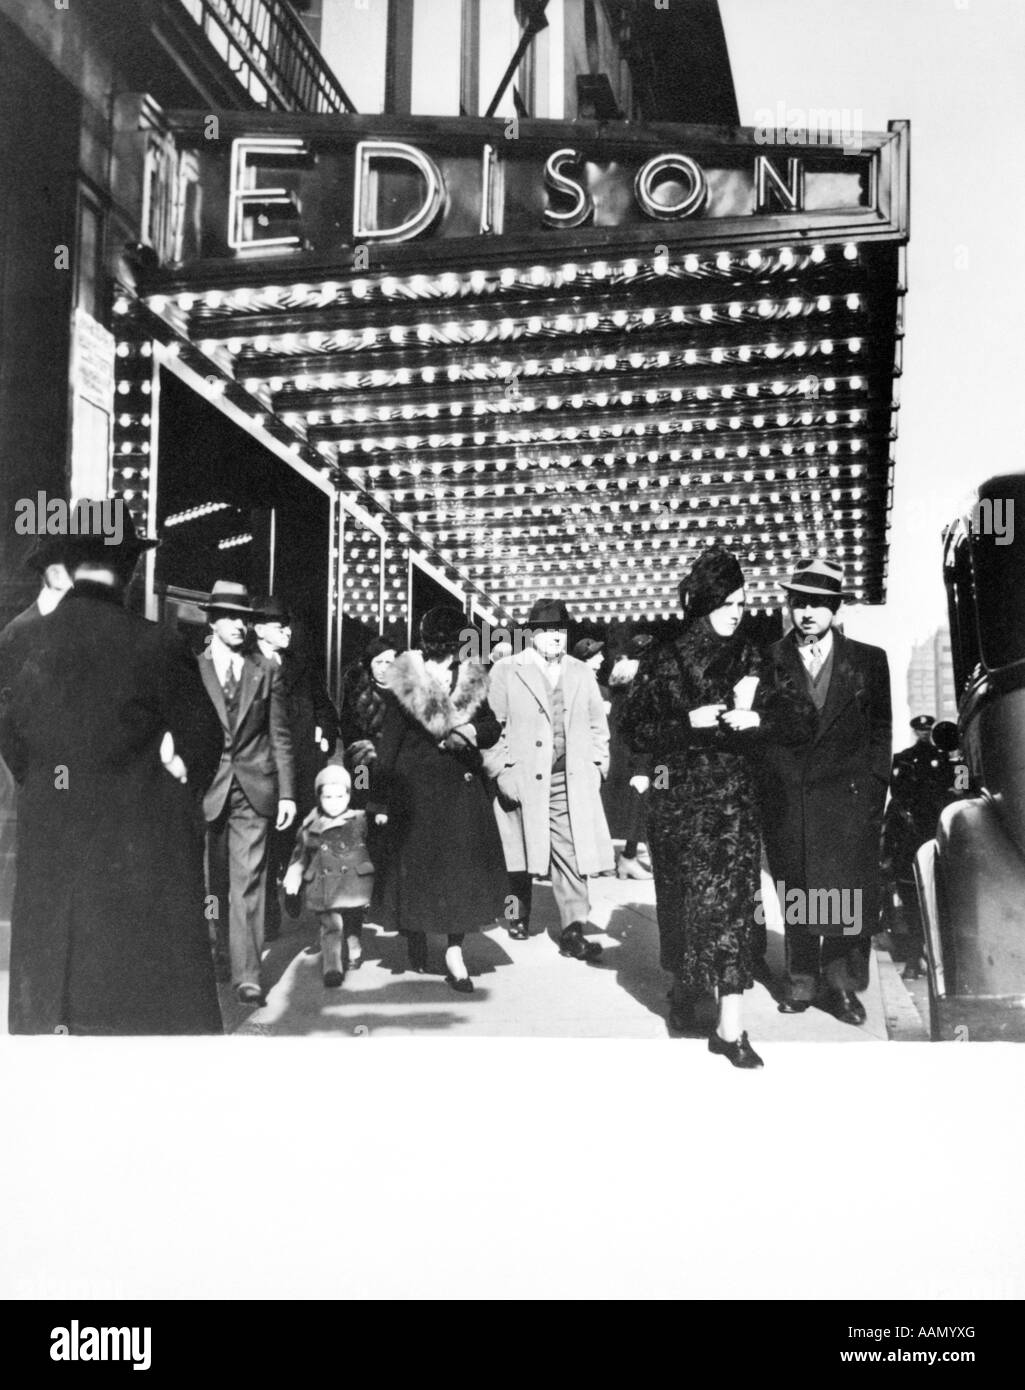 1930ER JAHREN FUßGÄNGER VOR HOTEL EDISON FESTZELT NEW YORKER THEATERVIERTEL STADT MANHATTAN WEST 47TH STREET Stockfoto